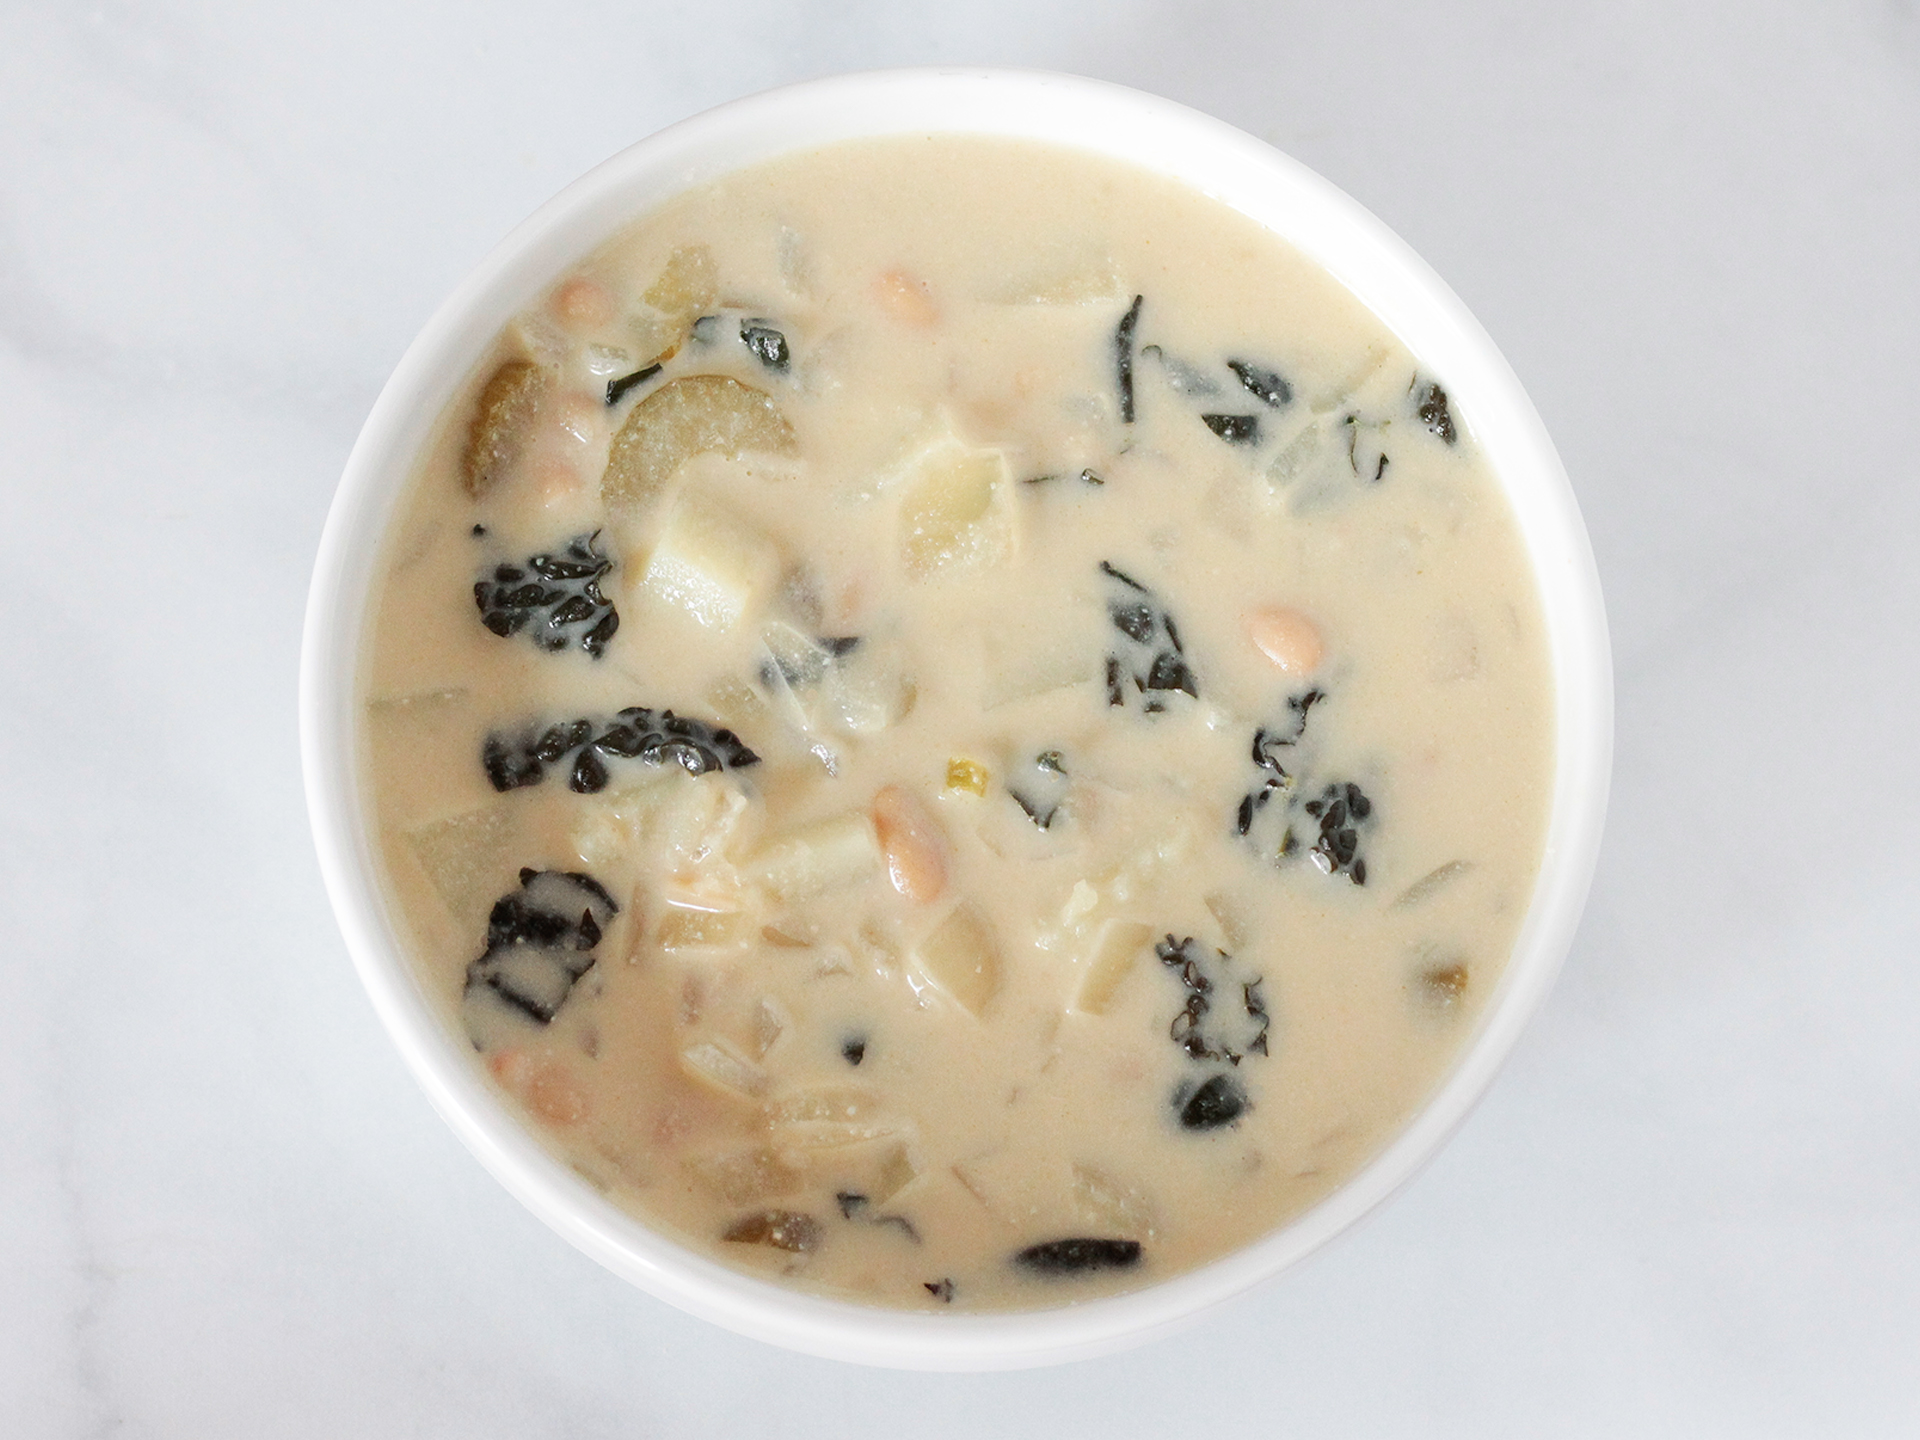 Creamy Potato Kale Soup